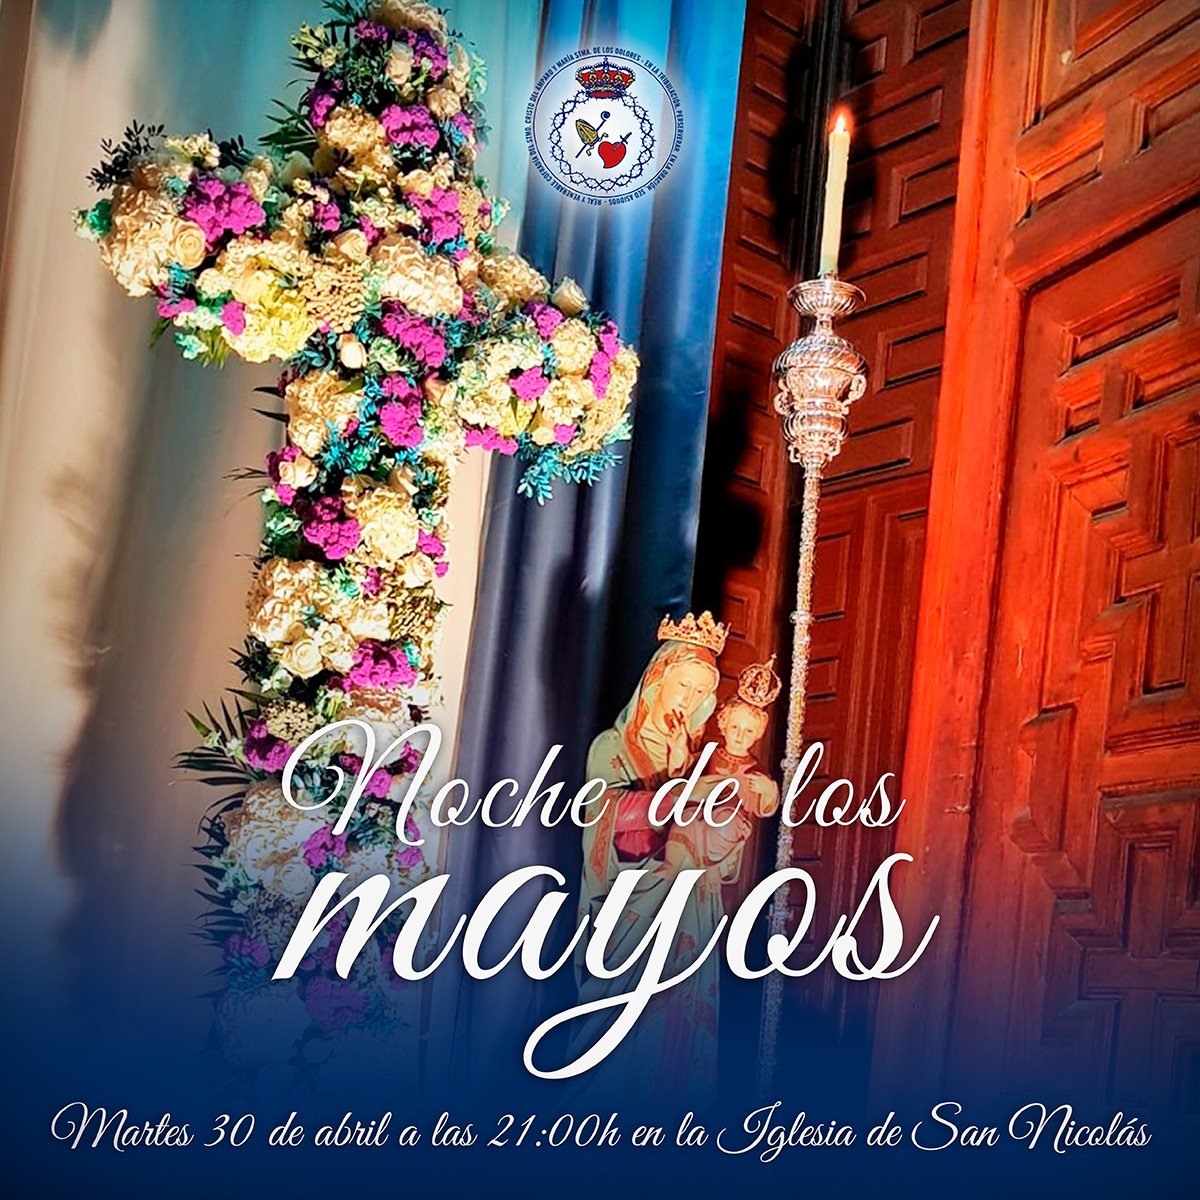 💐 𝗡𝗢𝗖𝗛𝗘 𝗗𝗘 𝗟𝗢𝗦 𝗠𝗔𝗬𝗢𝗦. El próximo martes 30 de abril, desde las 21 horas, la Cofradía del Amparo celebra la llegada del mes de mayo con el tradicional Altar en la puerta de la 📍 Iglesia de San Nicolás. #SSantaMurcia #MayosMurcia